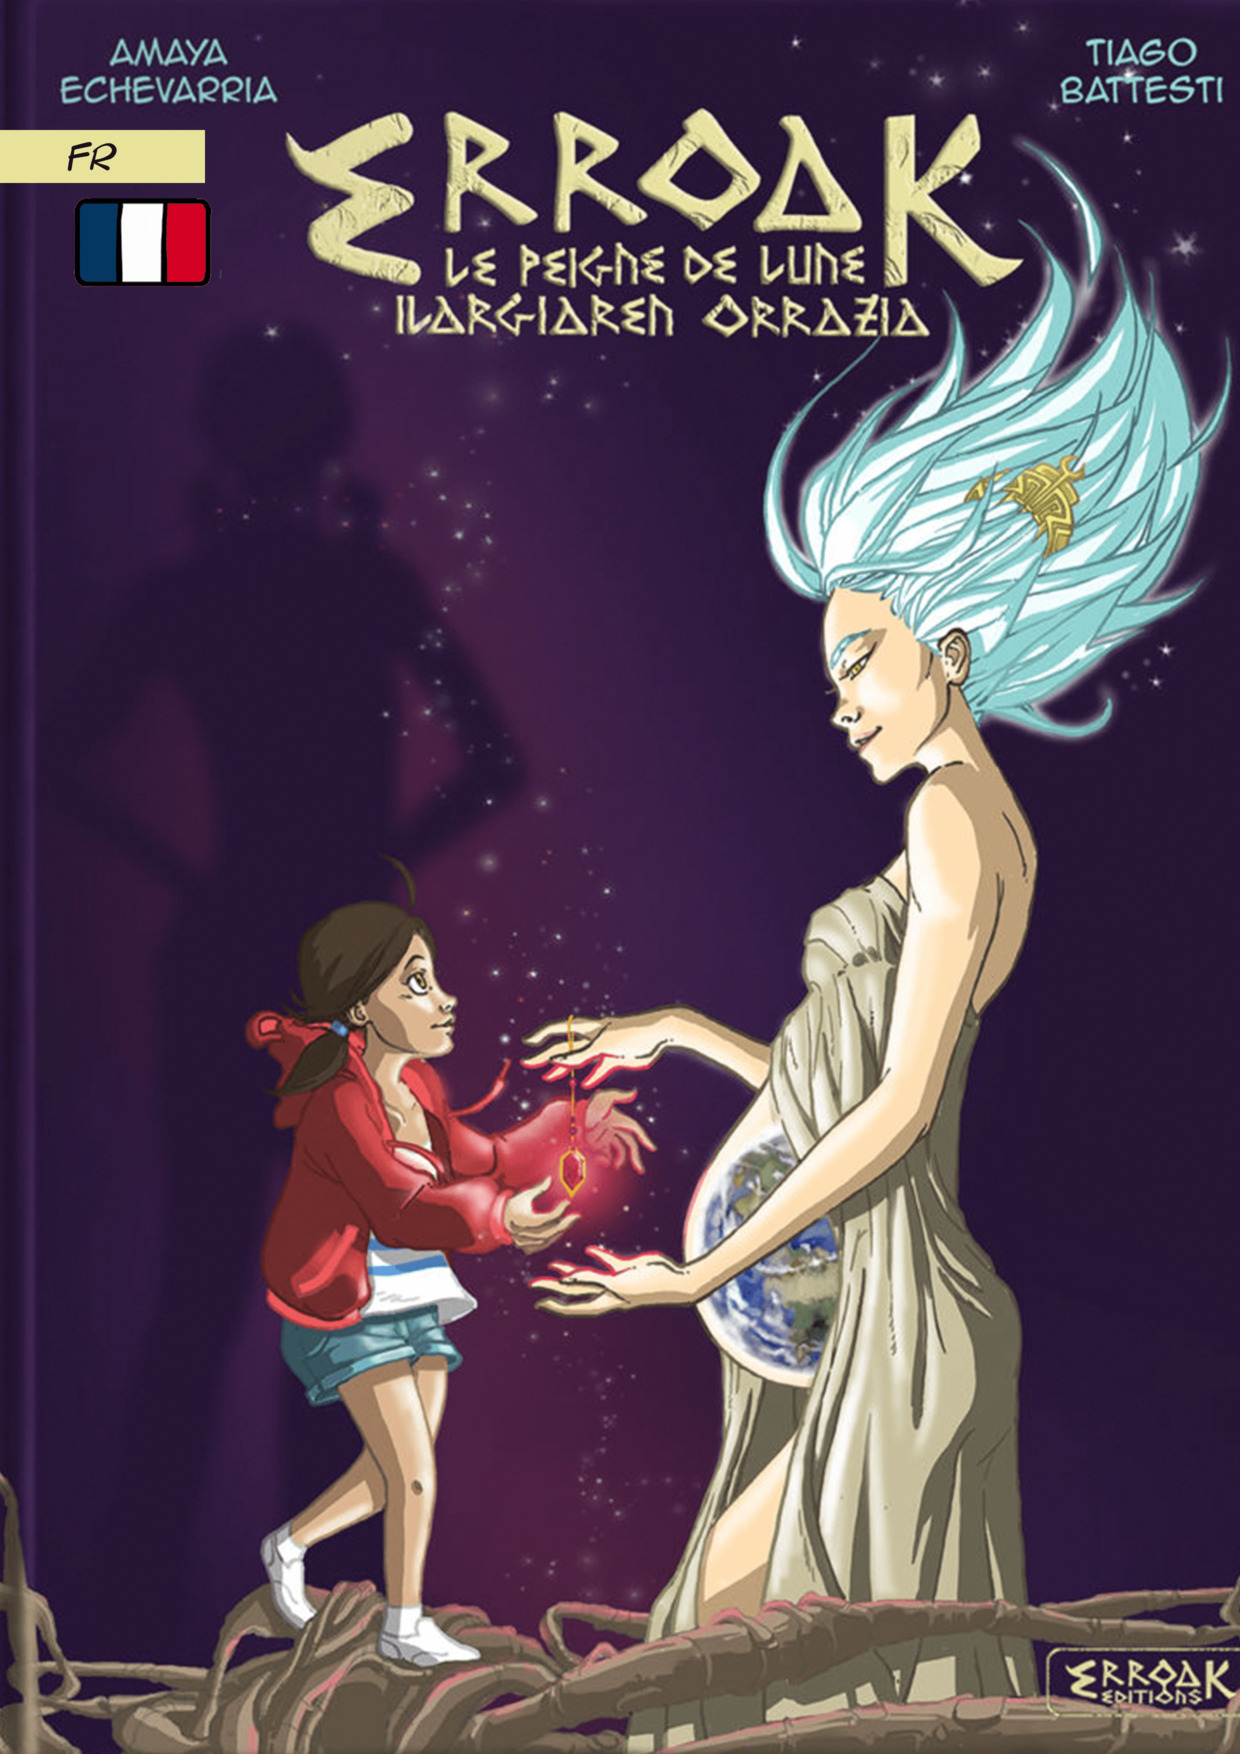 couverture du tome 1 de la BD Erroak, on y voit une jeune fille à la veste rouge et une femme au cheveux bleu/blanc qui porte la terre dans son ventre. Les deux personnages sont face à face